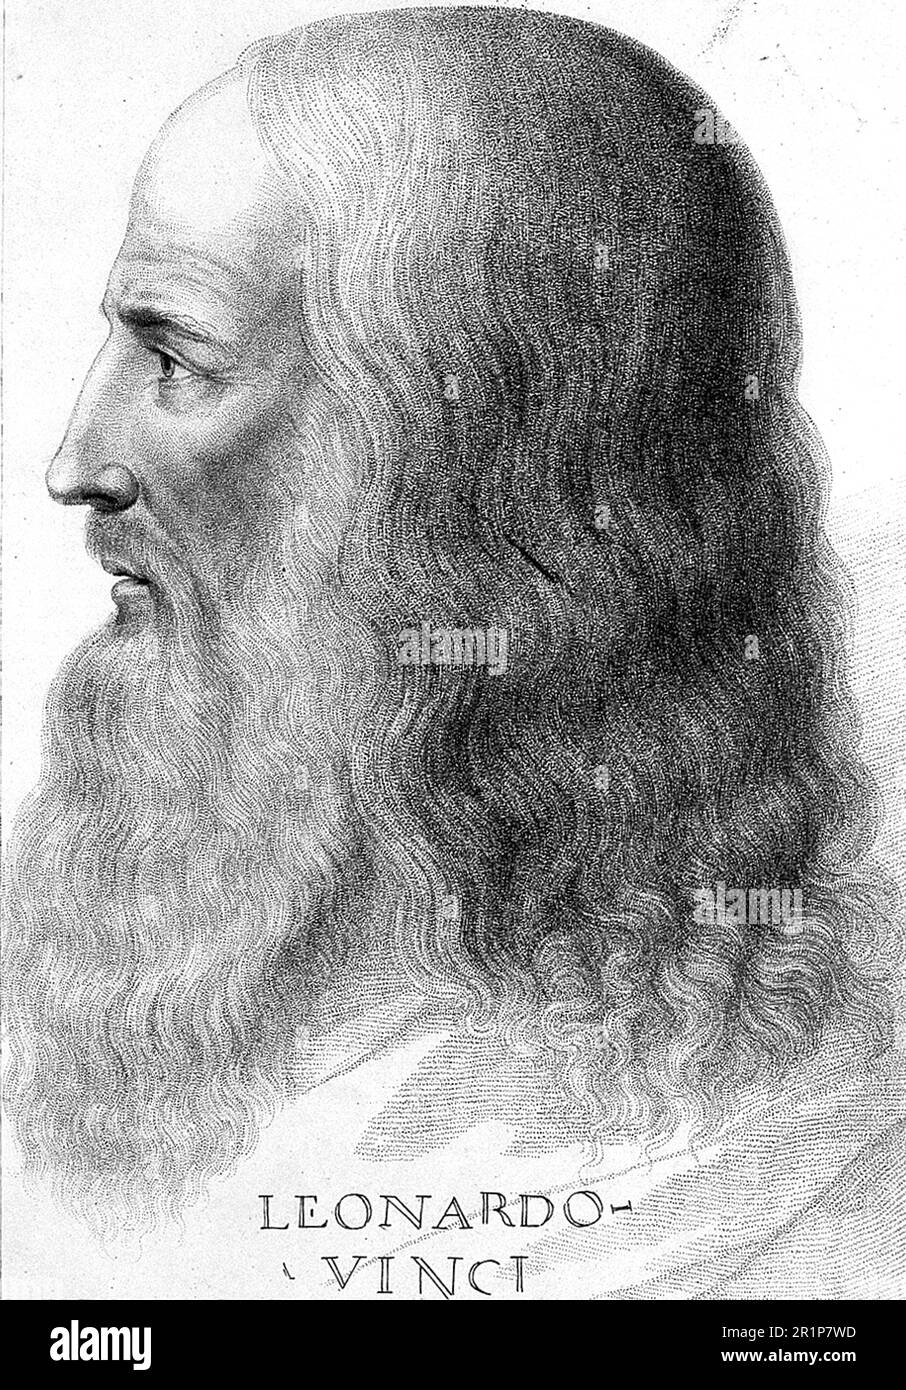 Leonardo da Vinci (15. April 1452 - 2. Mai 1519), eigentlich Lionardo di ser Piero da Vinci, war ein italienischer Maler, Bildhauer, Architekt, Anatomist, Mechaniker, Ingenieur und Naturphilosoph, historische, digital restaurierte Reproduktion eines Originals aus dem 19. Jahrhundert. / Leonardo da Vinci (15. April 1452 - 2. Mai 1519), eigentlich Lionardo di ser Piero da Vinci, war ein italienischer Maler, Bildhauer, Architekt, Anatom, Mechaniker, Ingenieur und Naturphilosoph, Historisch, digitale Restaurierte Reproduktion von einer Vorlage aus dem 19. Hundert Stockfoto